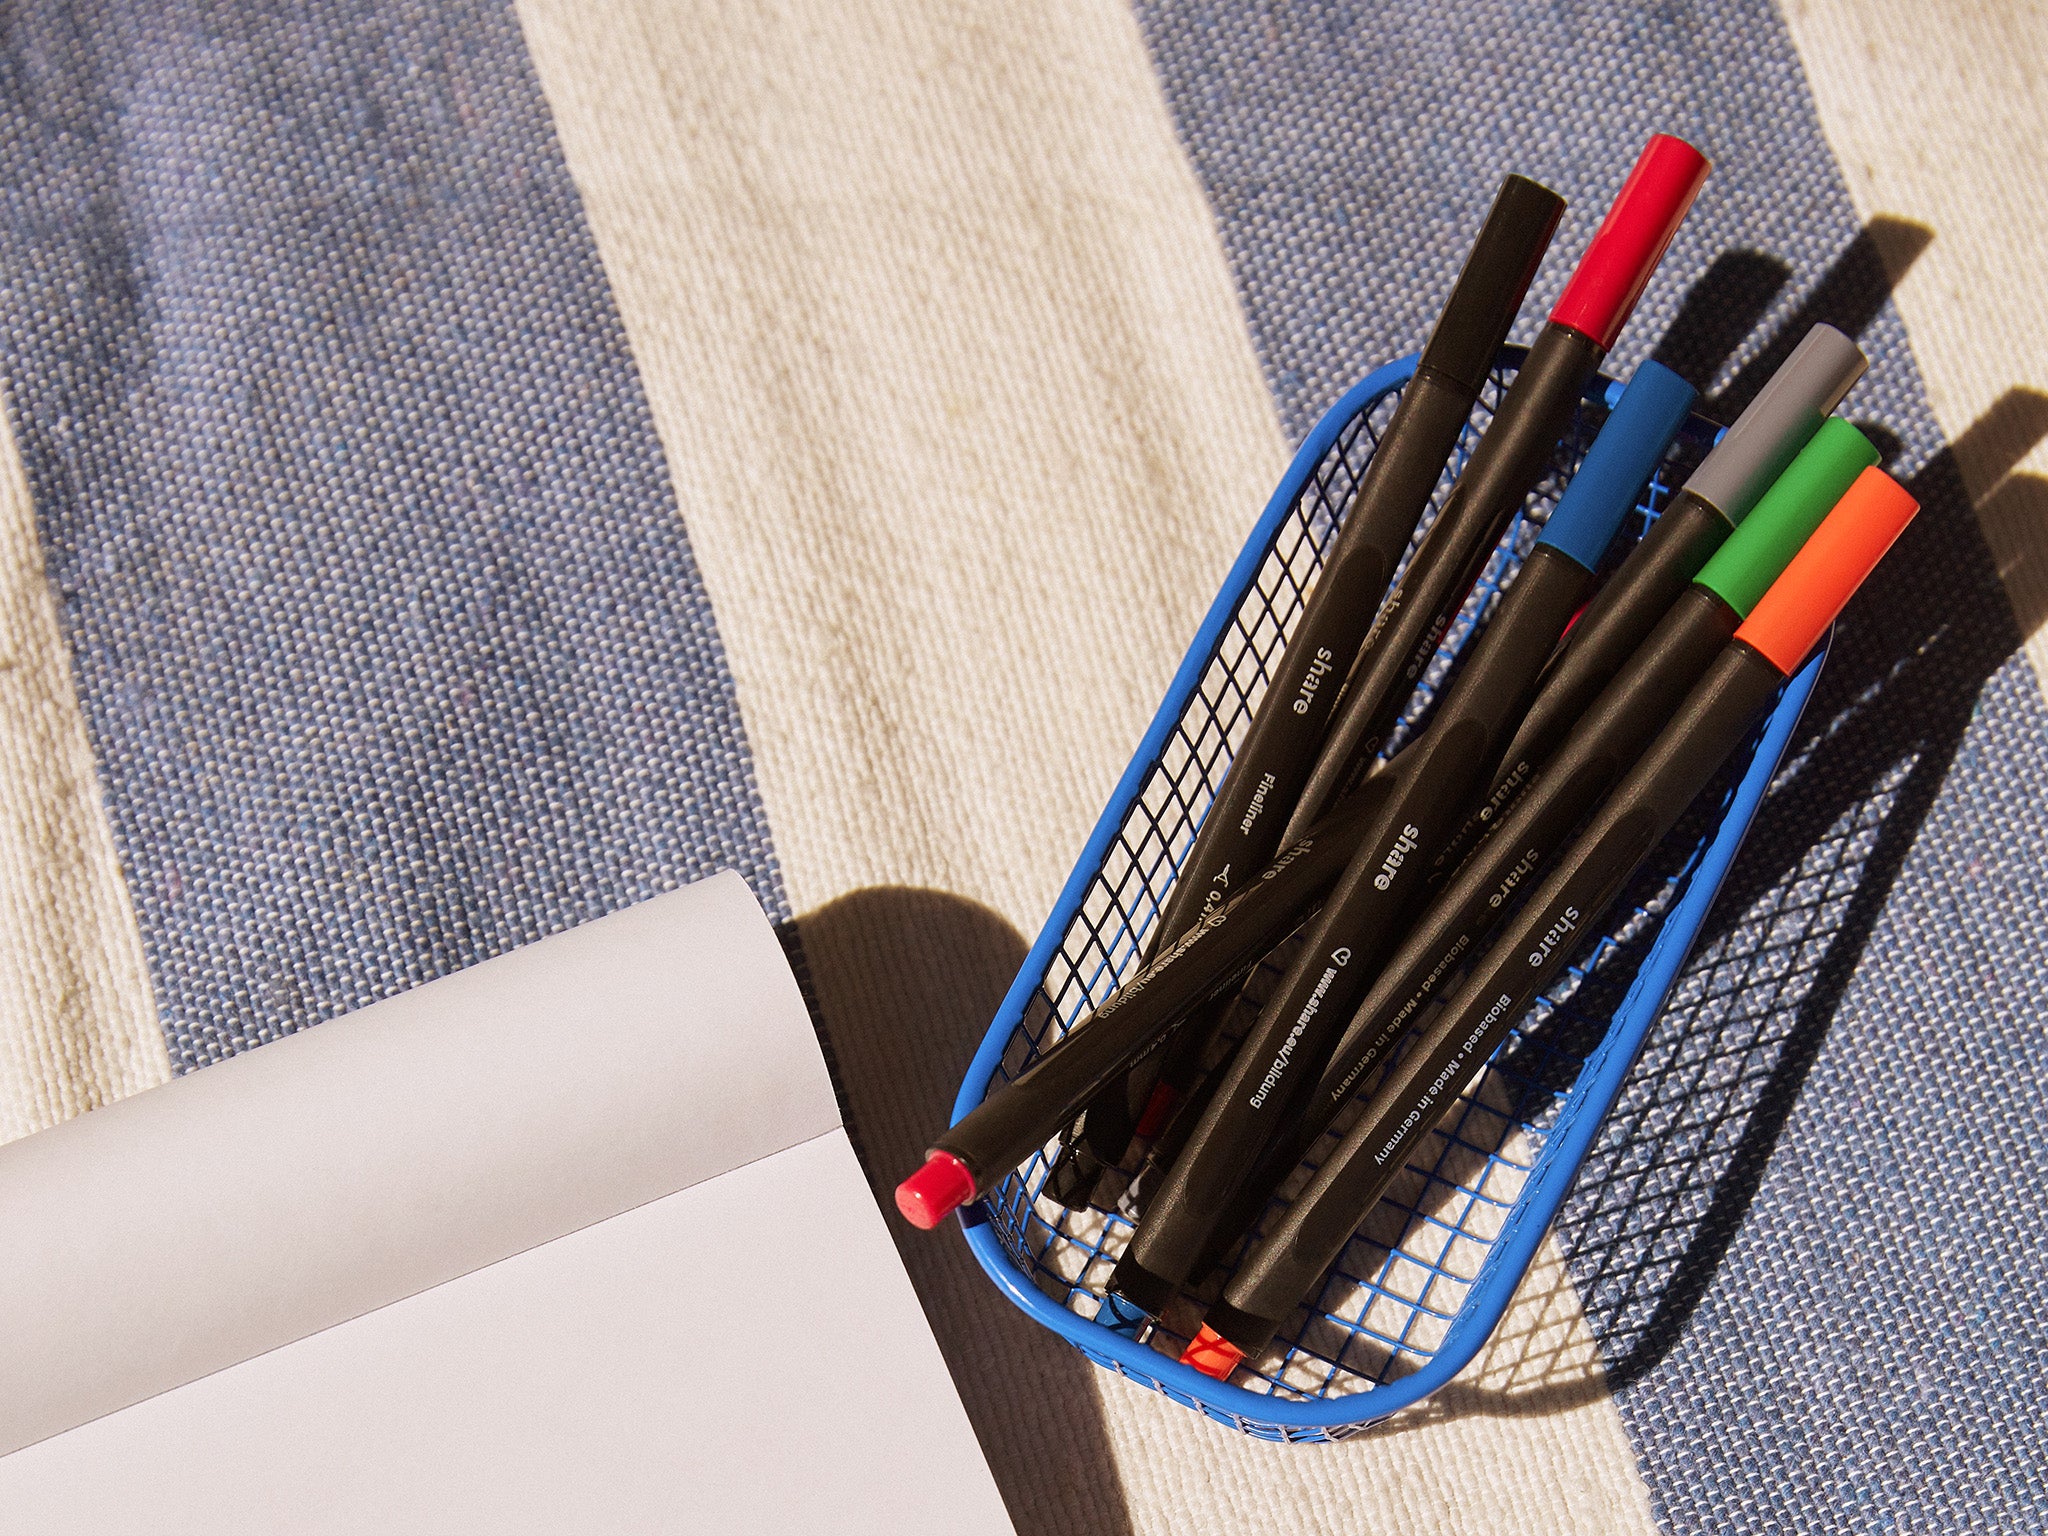 Eine Packung mit sechs Share-Fineliner-Stiften in verschiedenen Farben mit einer 0,4-mm-Spitze, präsentiert in einer umweltfreundlichen Verpackung.